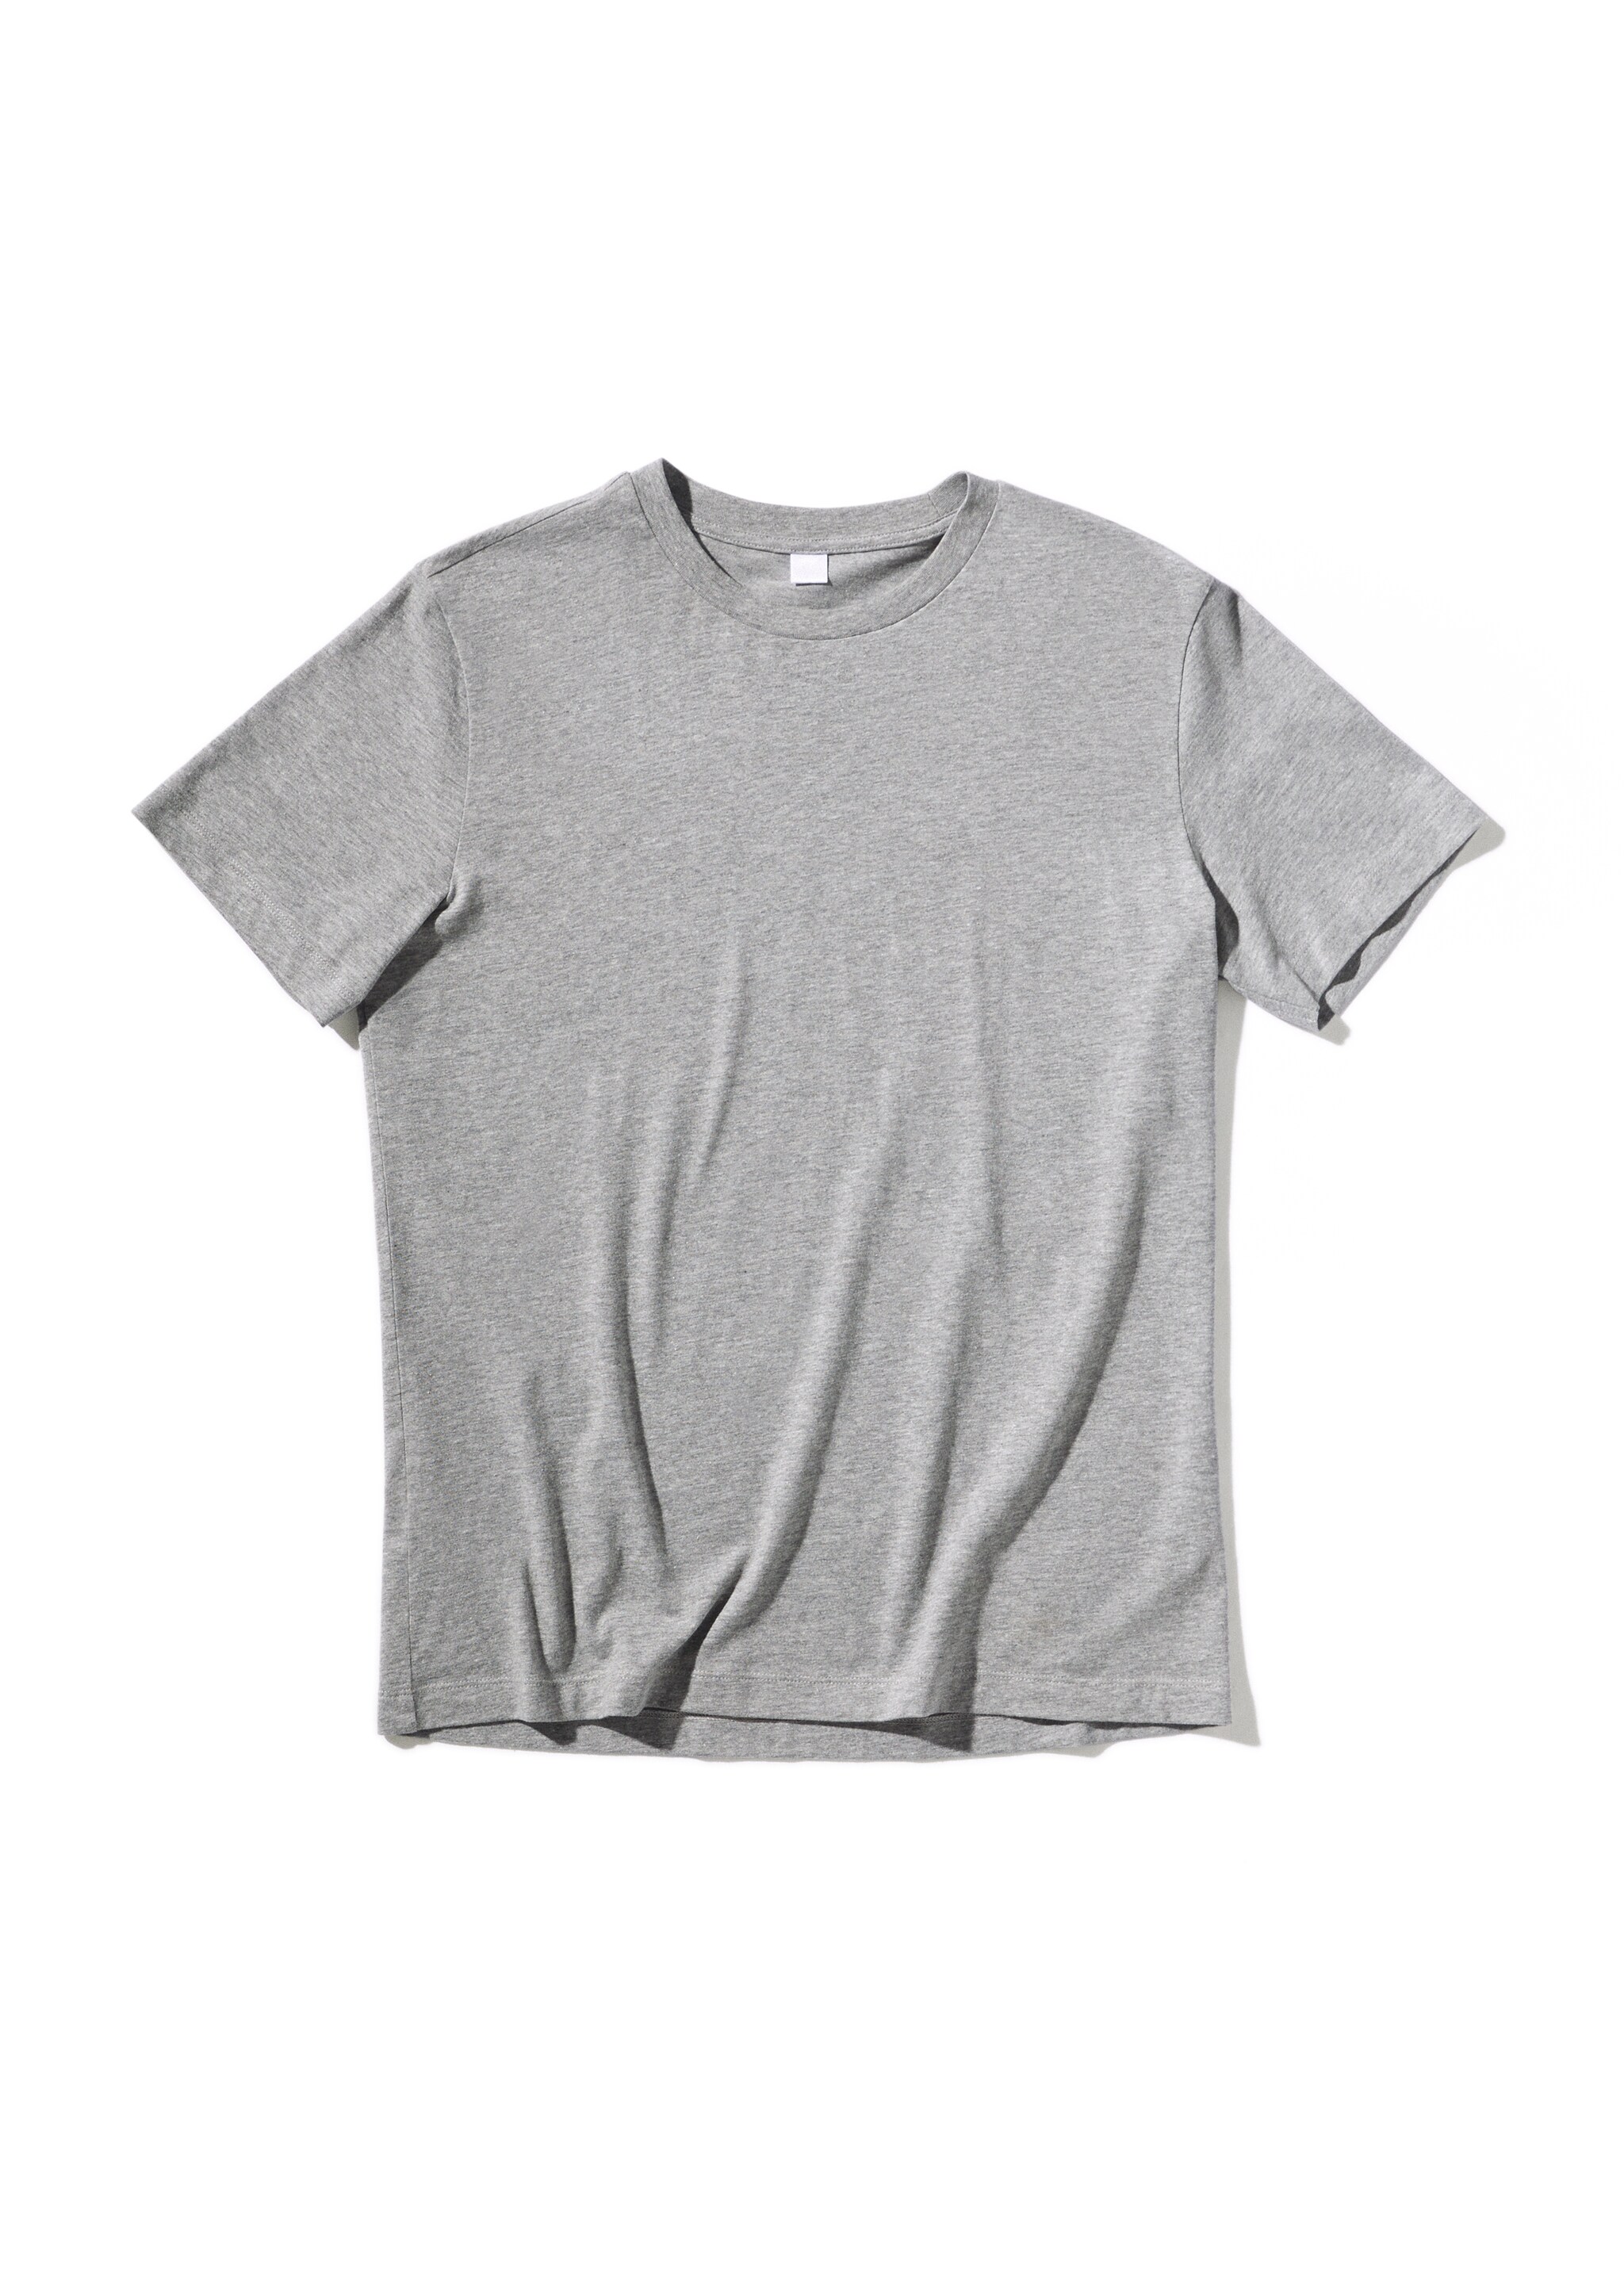 Camiseta básica algodón sostenible - Detalle del artículo 9